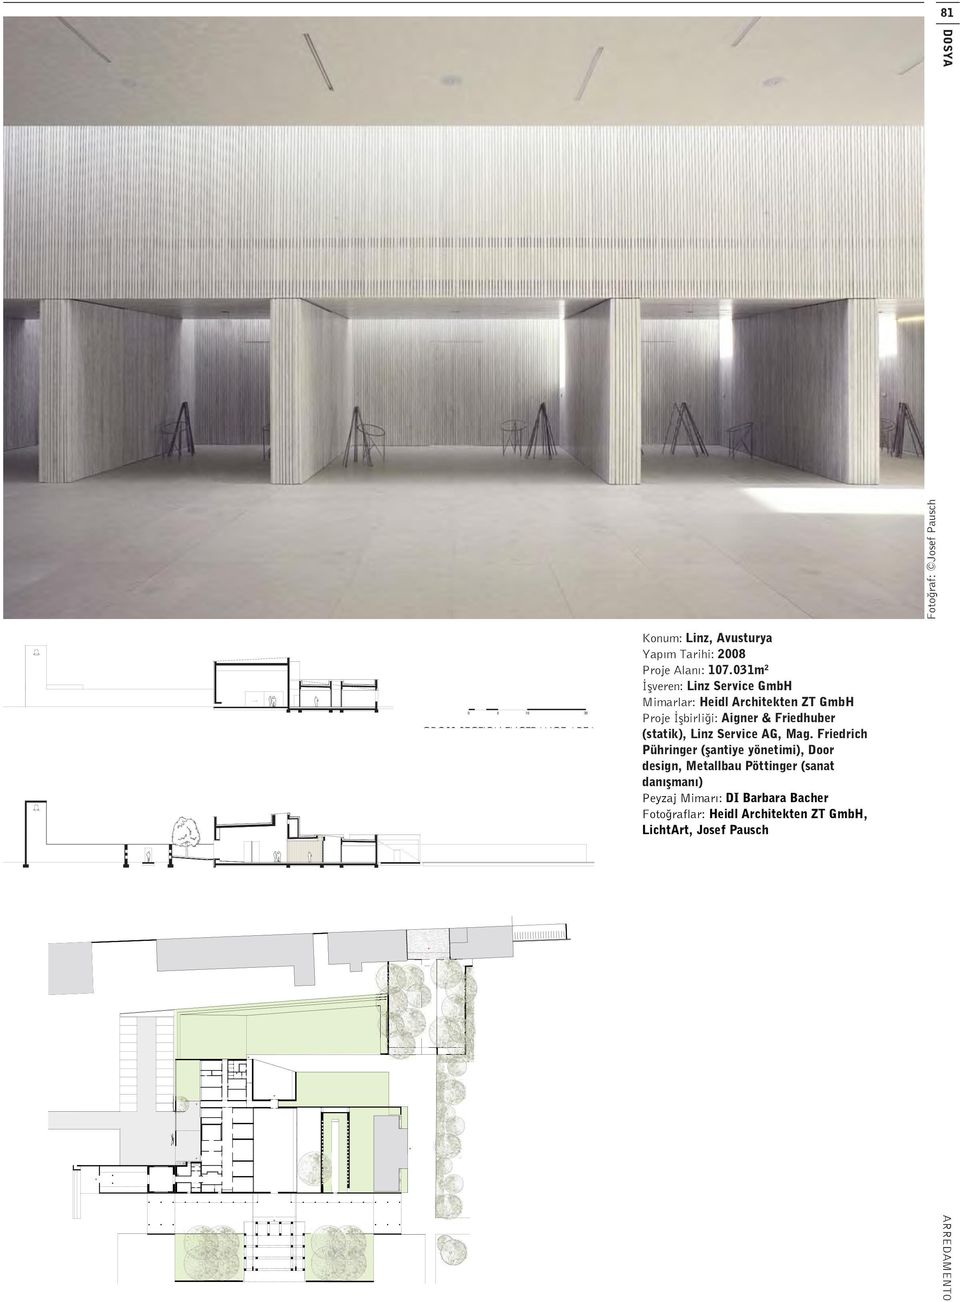 031m 2 veren: Linz Service GmbH Mimarlar: Heidl Architekten ZT GmbH Proje birli i: Aigner & Friedhuber (statik), Linz